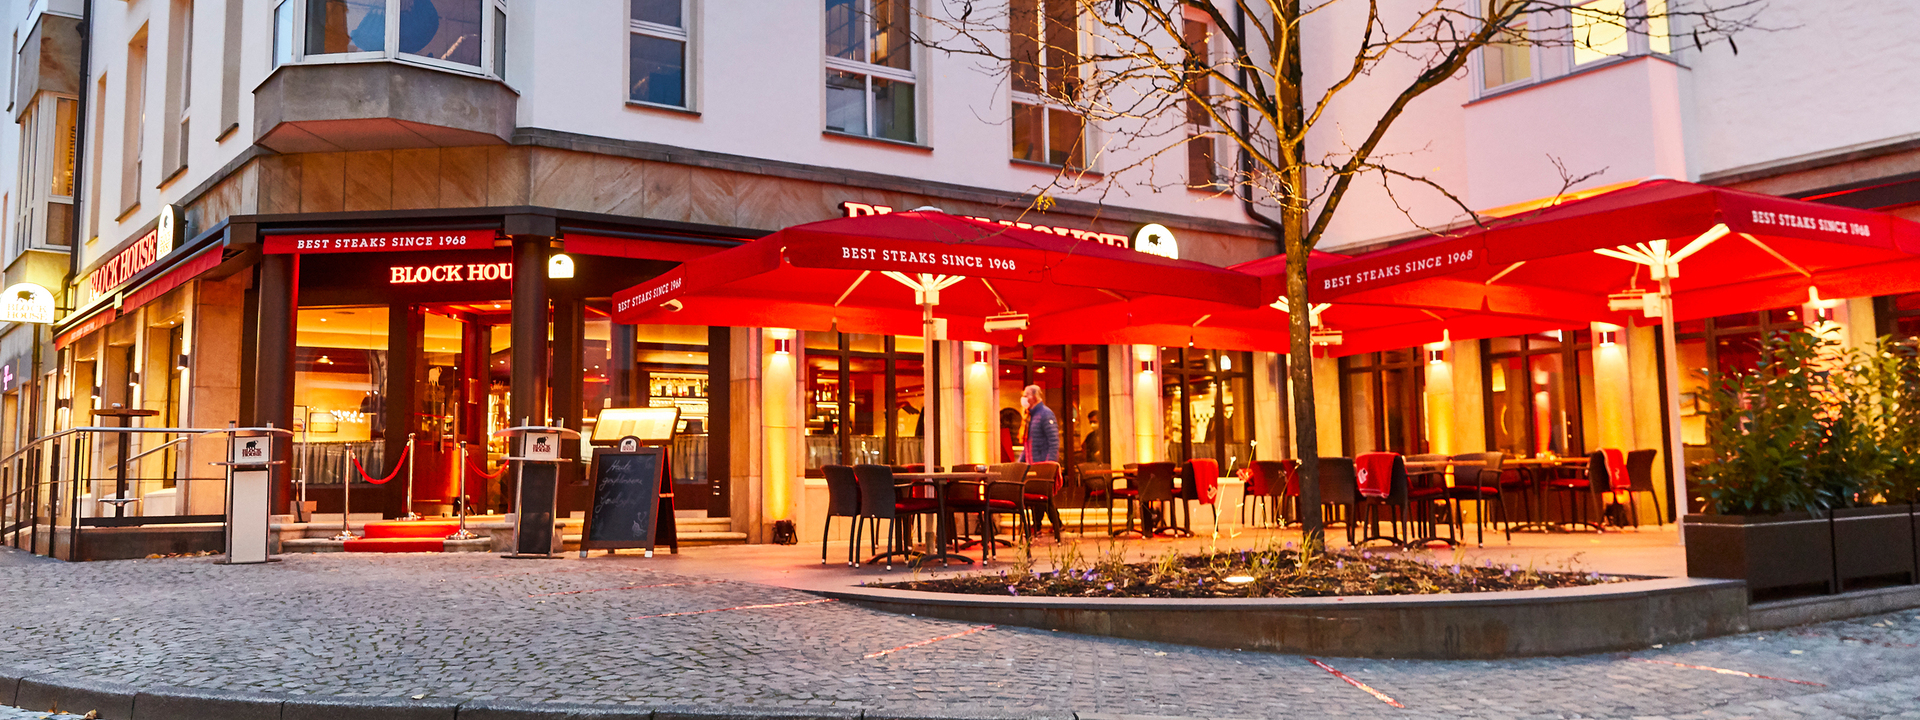 Beleuchteter Außenbereich des BLOCK HOUSE Restaurants in Bielefeld